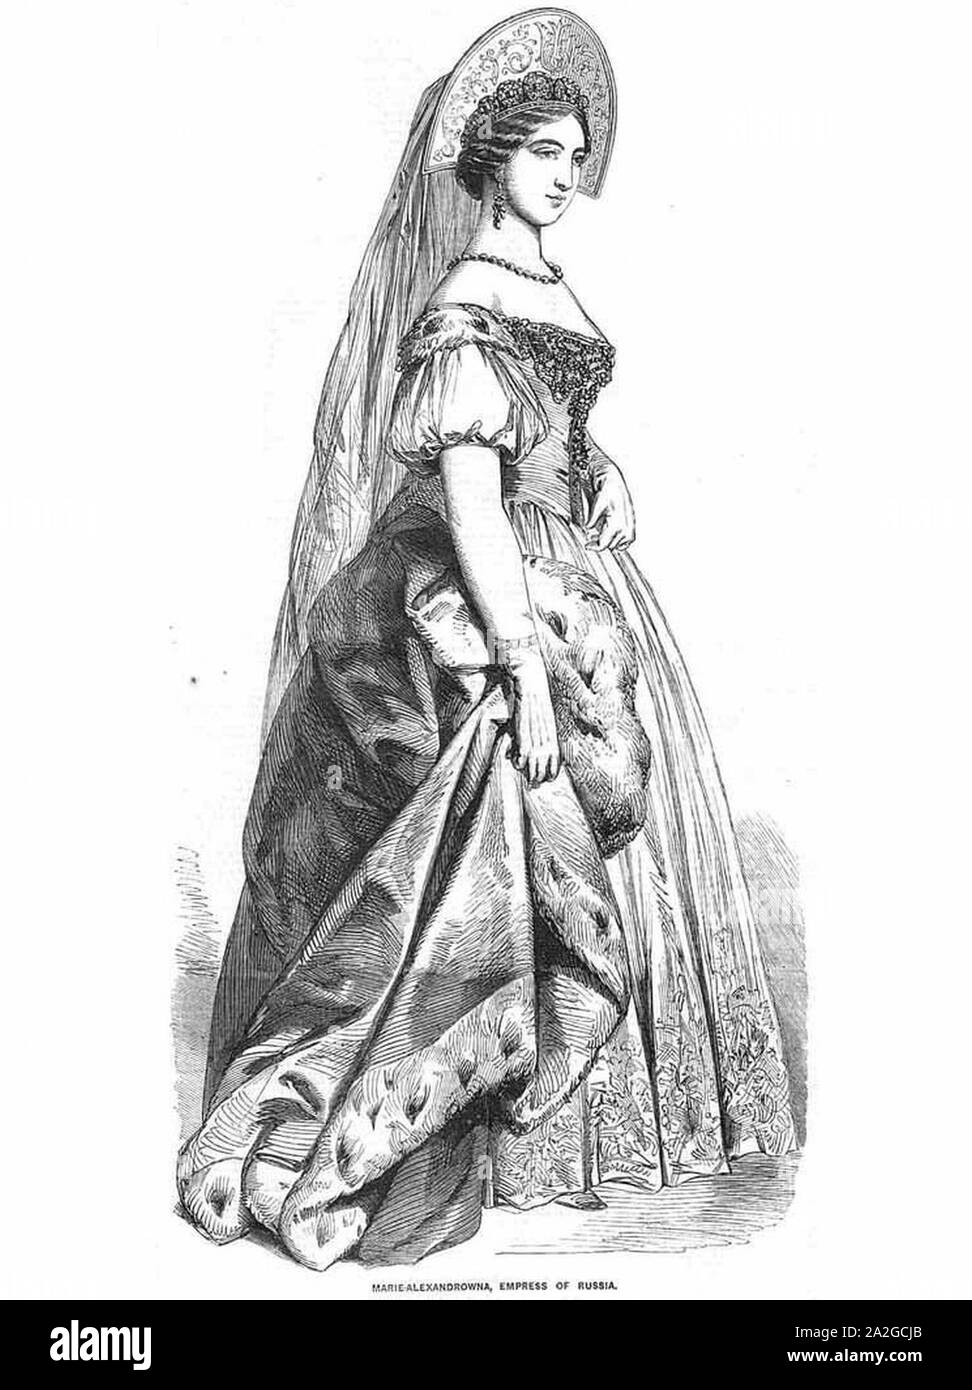 La emperatriz María Alexandrovna de Rusia. Foto de stock